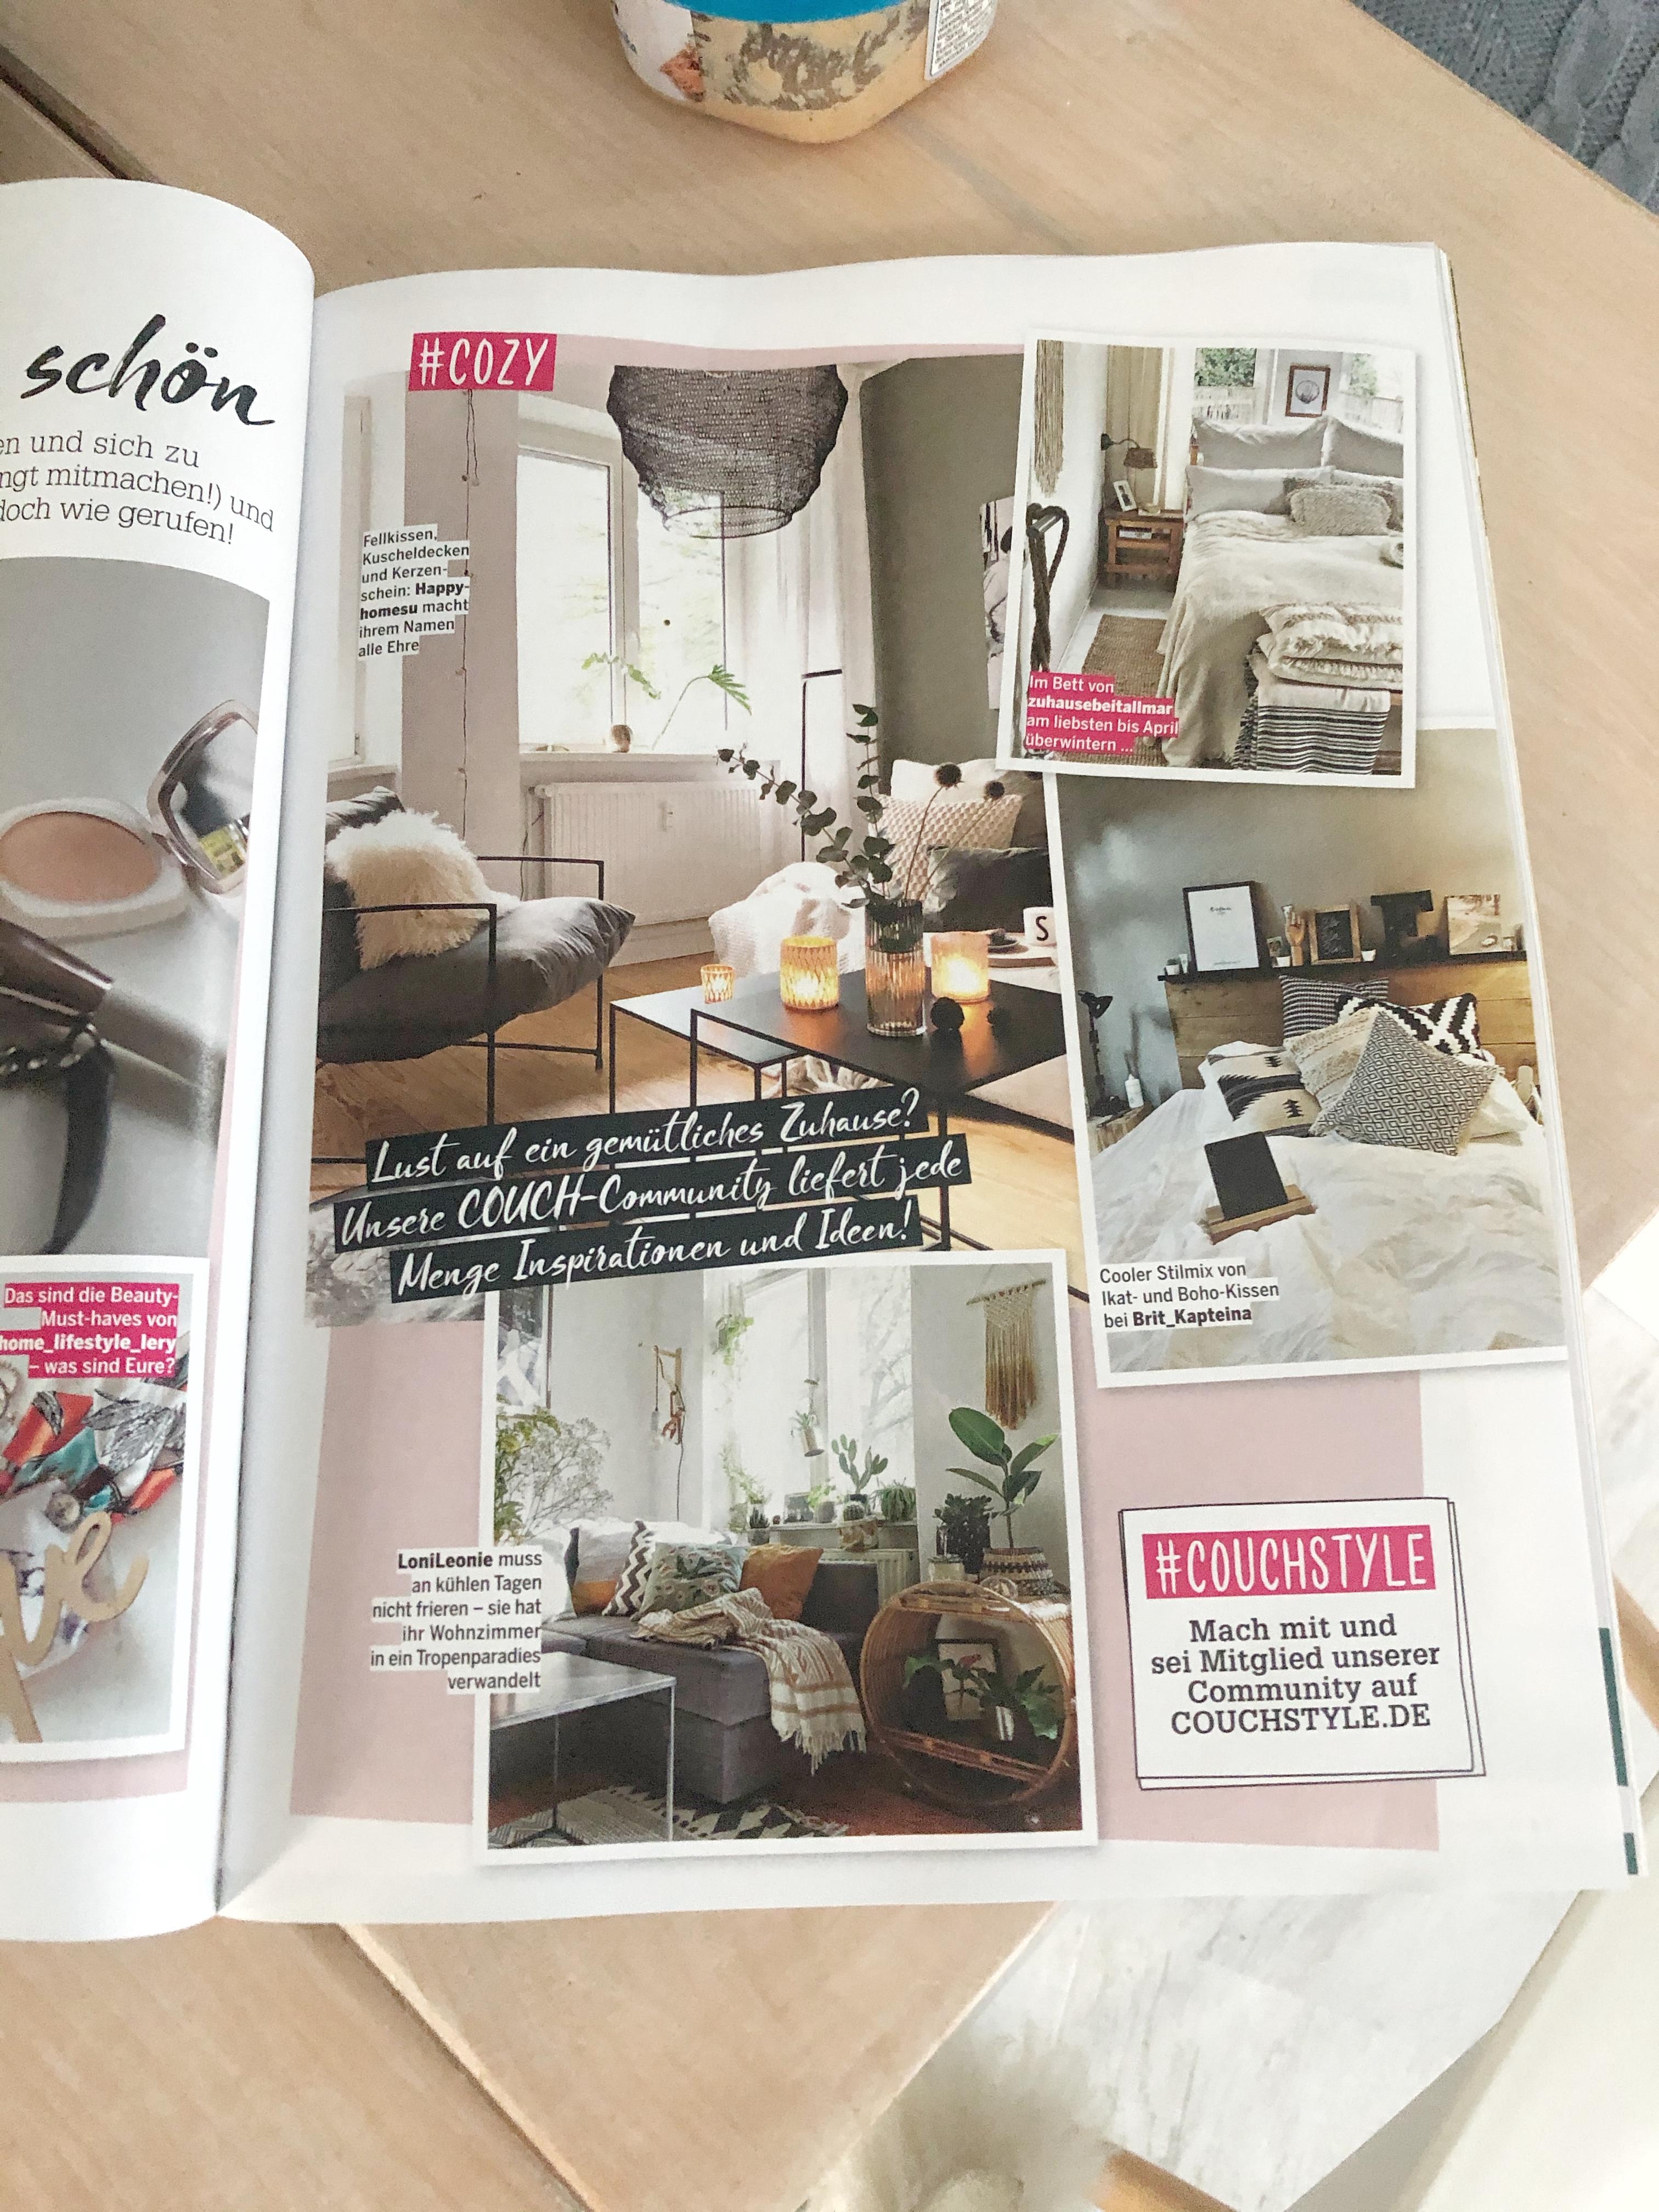 Danke Couchstyle für mein Foto in eurer aktuellen Ausgabe ❤️😘
#bedroom#cozy 
